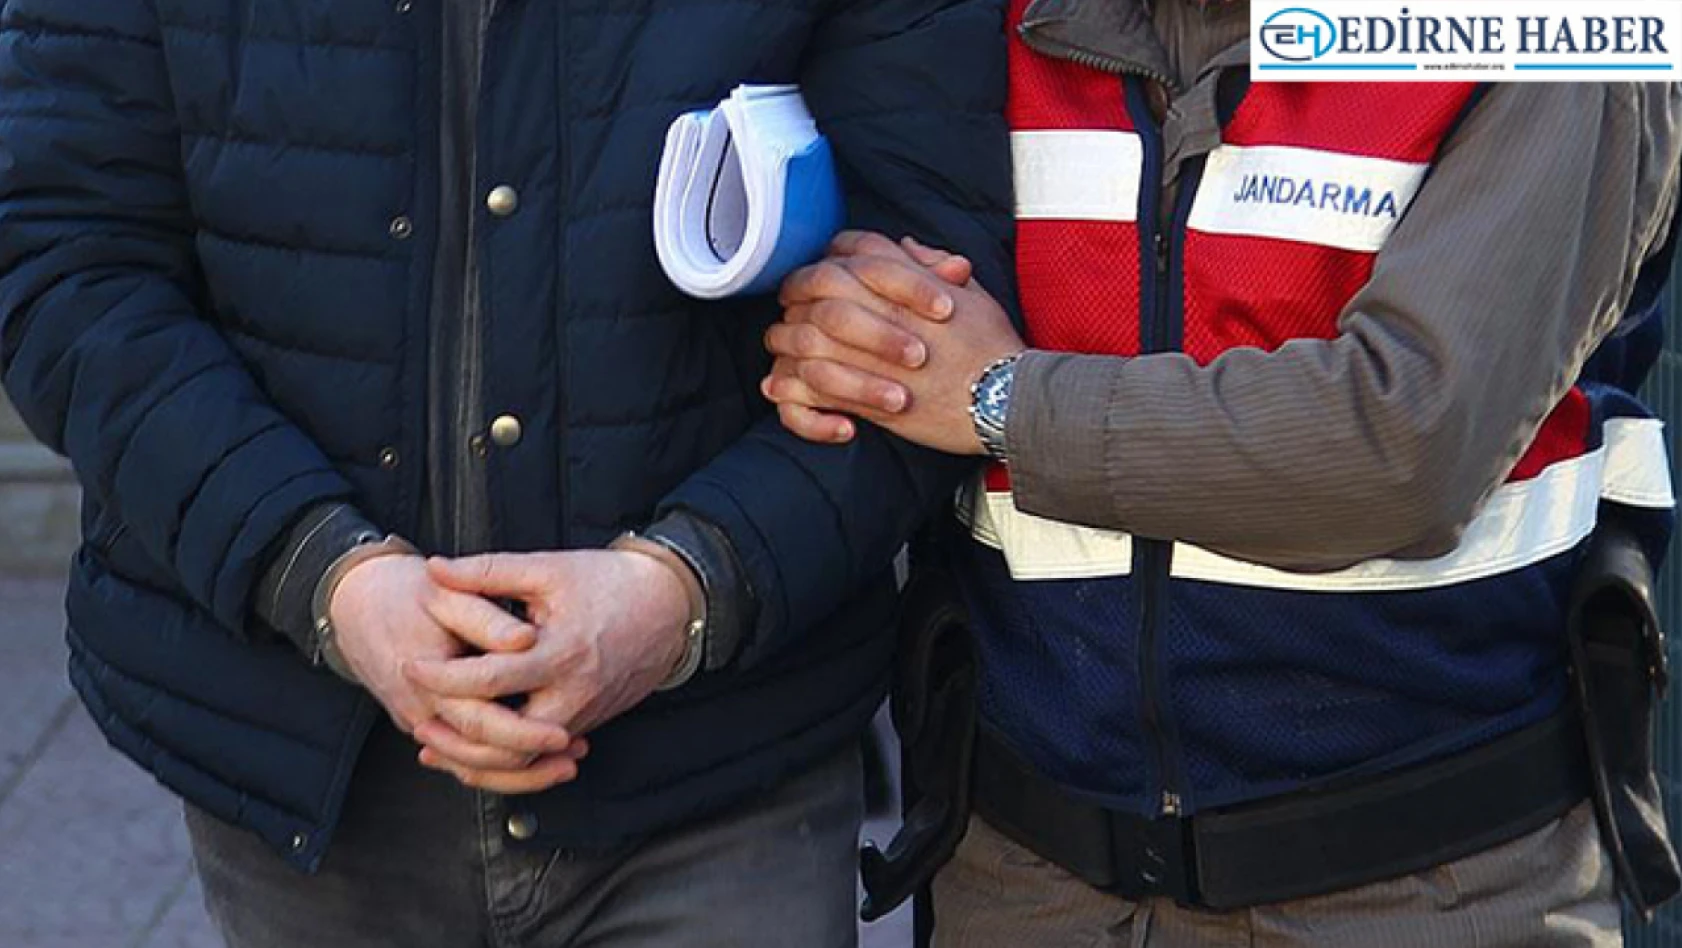 Edirne'de Uyuşturucu Ticareti İddiasıyla 2 Şüpheli Tutuklandı